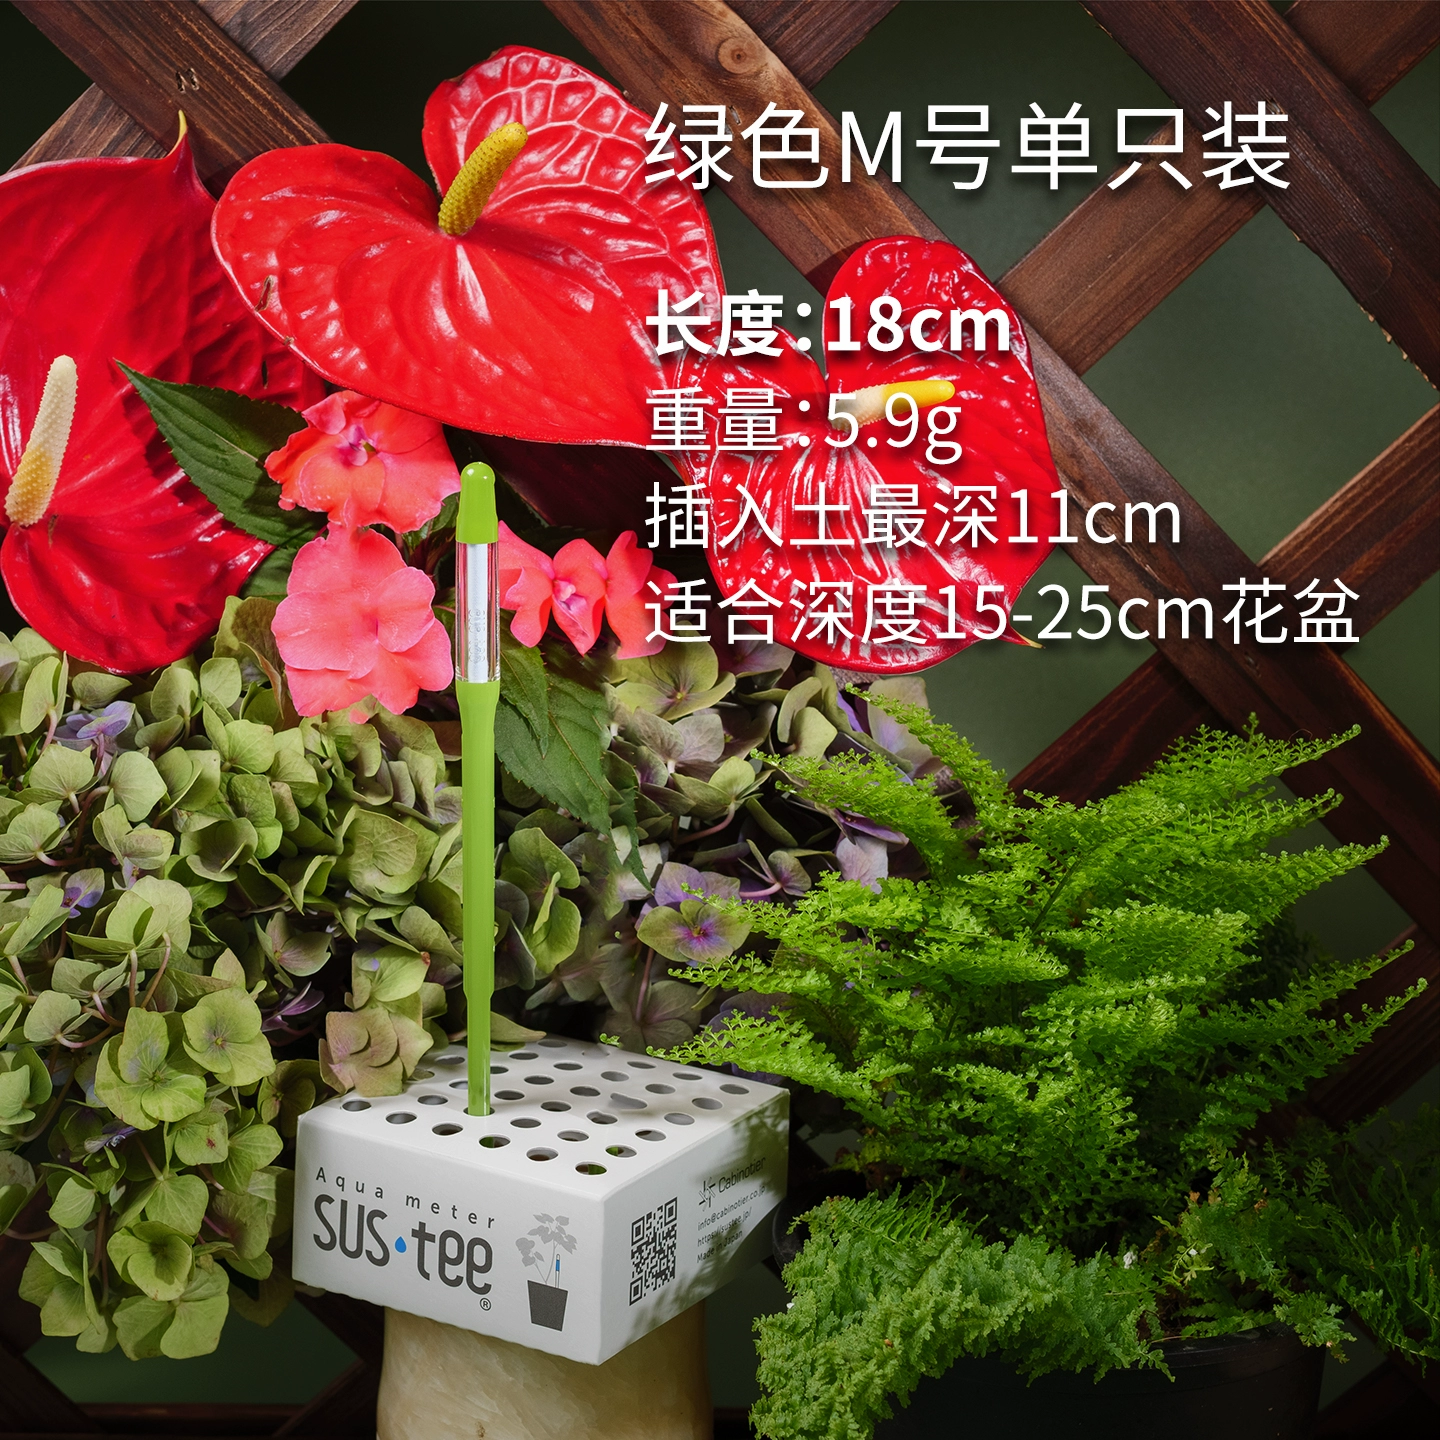 Huaxin sustee máy đo độ ẩm đất đo độ ẩm nồi máy dò độ ẩm đất phong lan thiếu nước nhắc nhở tưới nước máy kiểm tra độ ẩm Máy đo độ ẩm